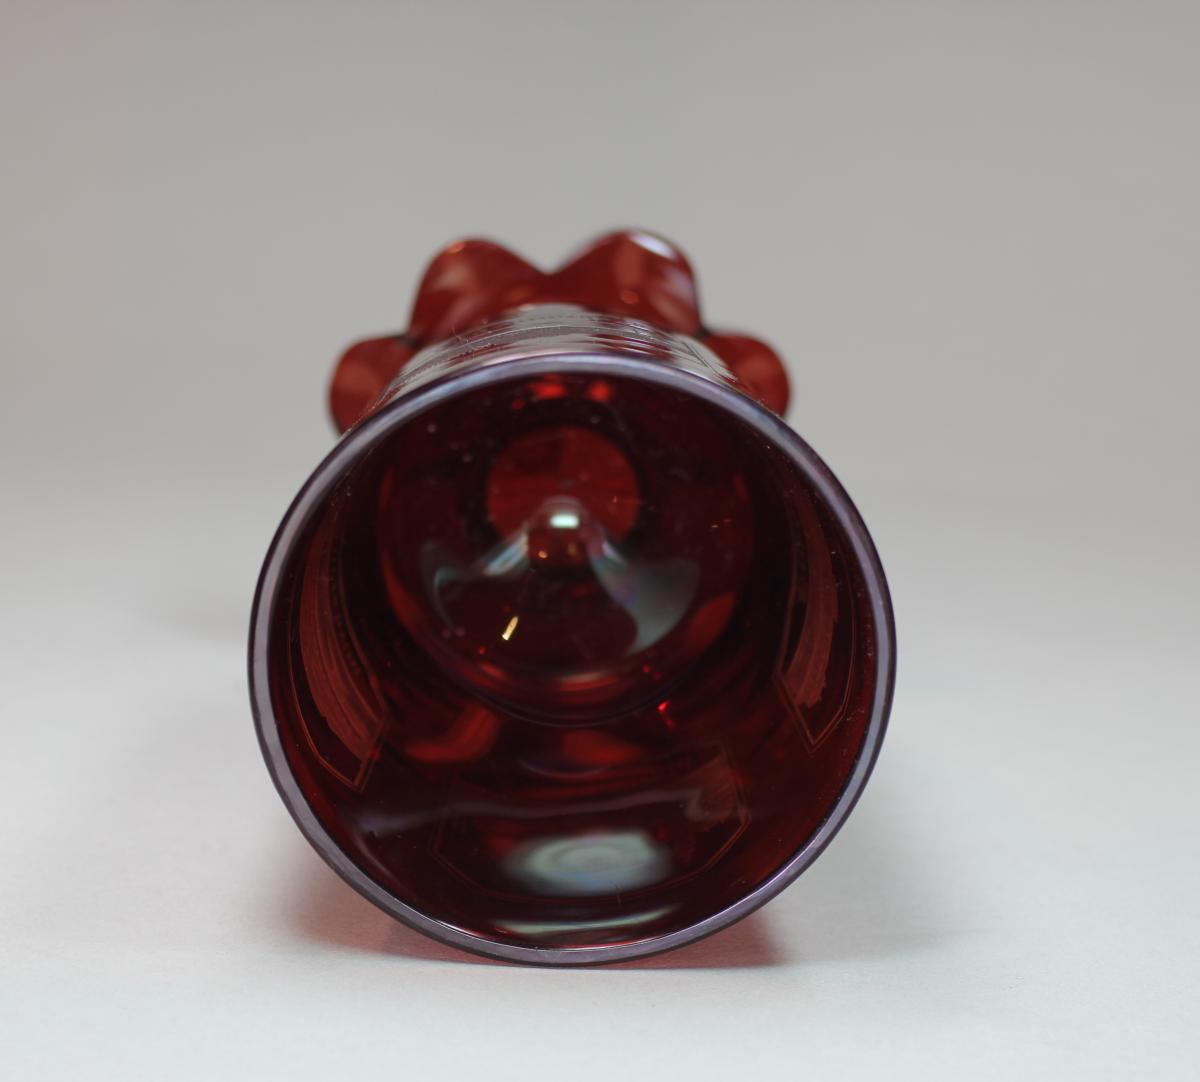 Bohemian ruby glass beaker, circa 1840